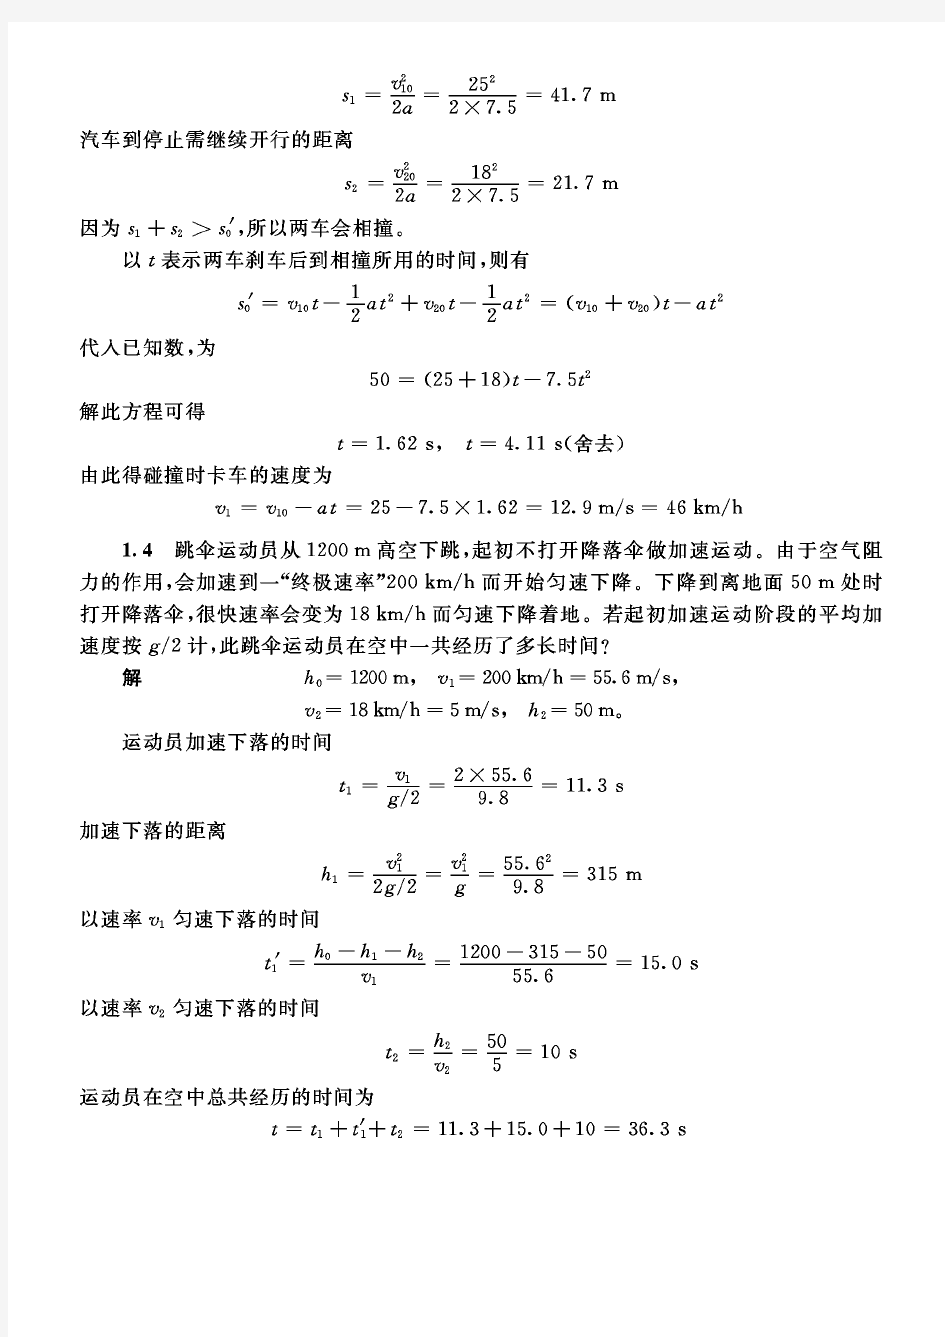 (推荐)张三慧大学物理上册习题答案详解(1章-9章)